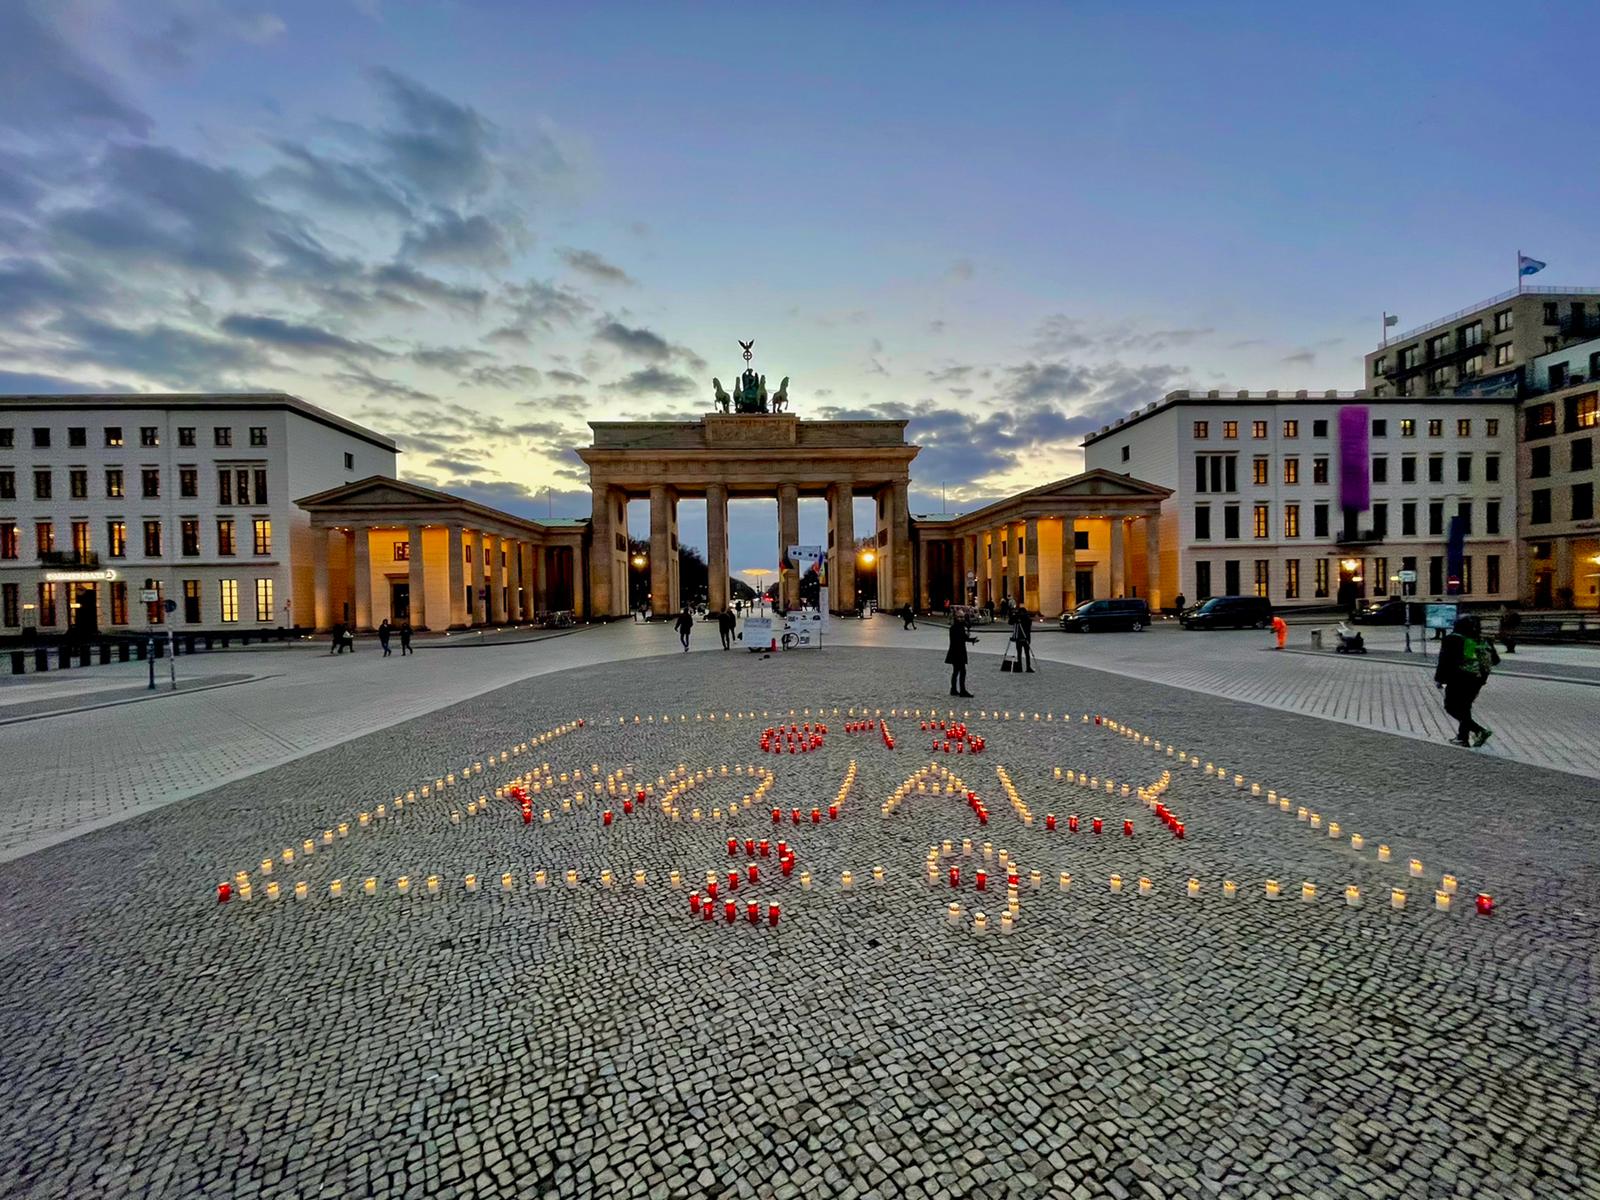 Almaniyada Xocalı soyqırımı ilə bağlı maraqlı flaşmob təşkil edilib - FOTO